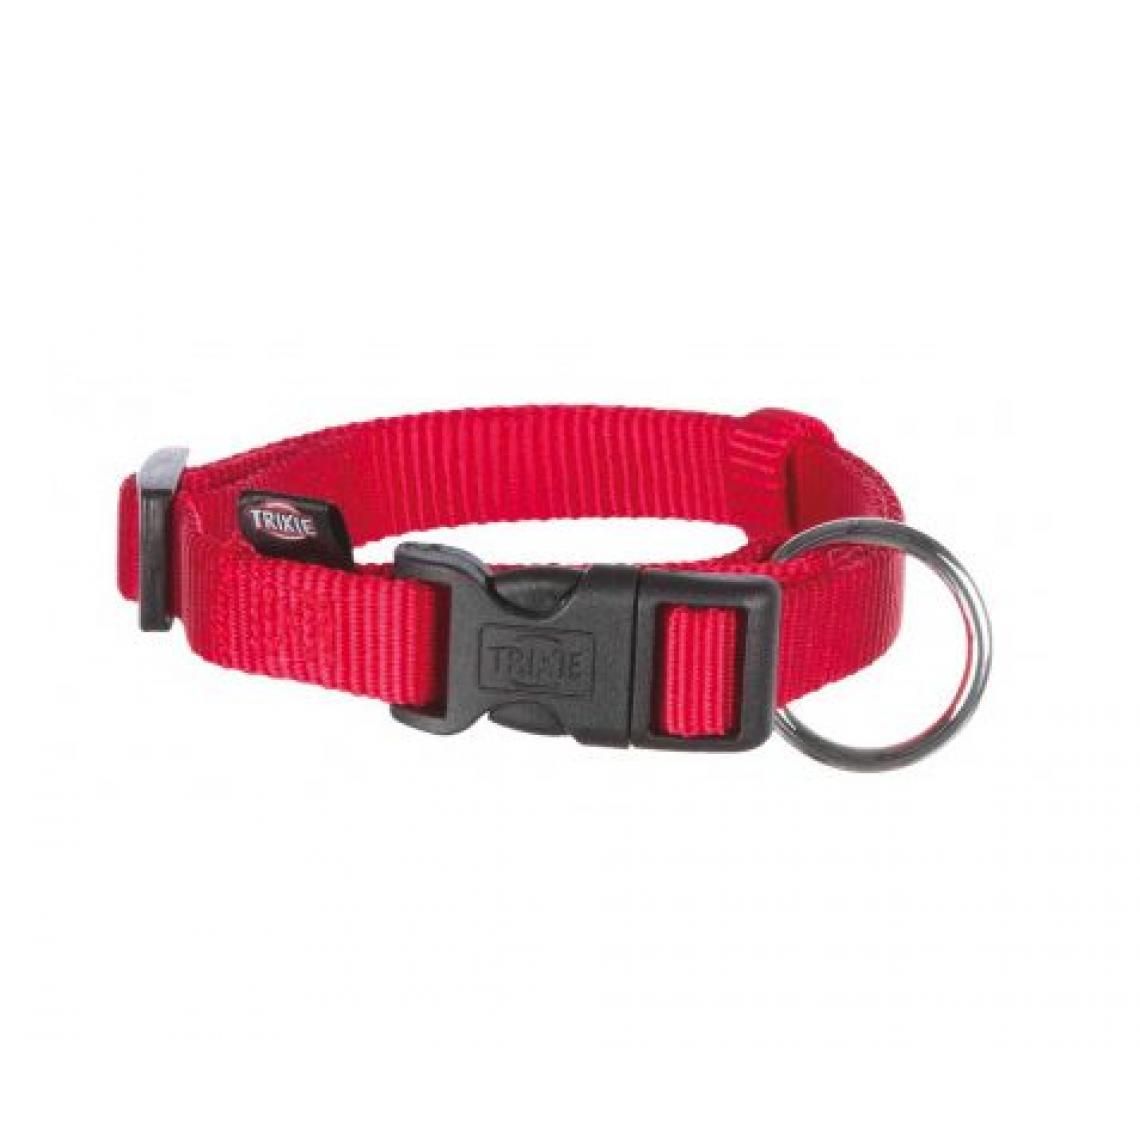 Trixie - TRIXIE TX-14213 collier pour animaux de compagnie Chien Collier standard Rouge S-M - Collier pour chien